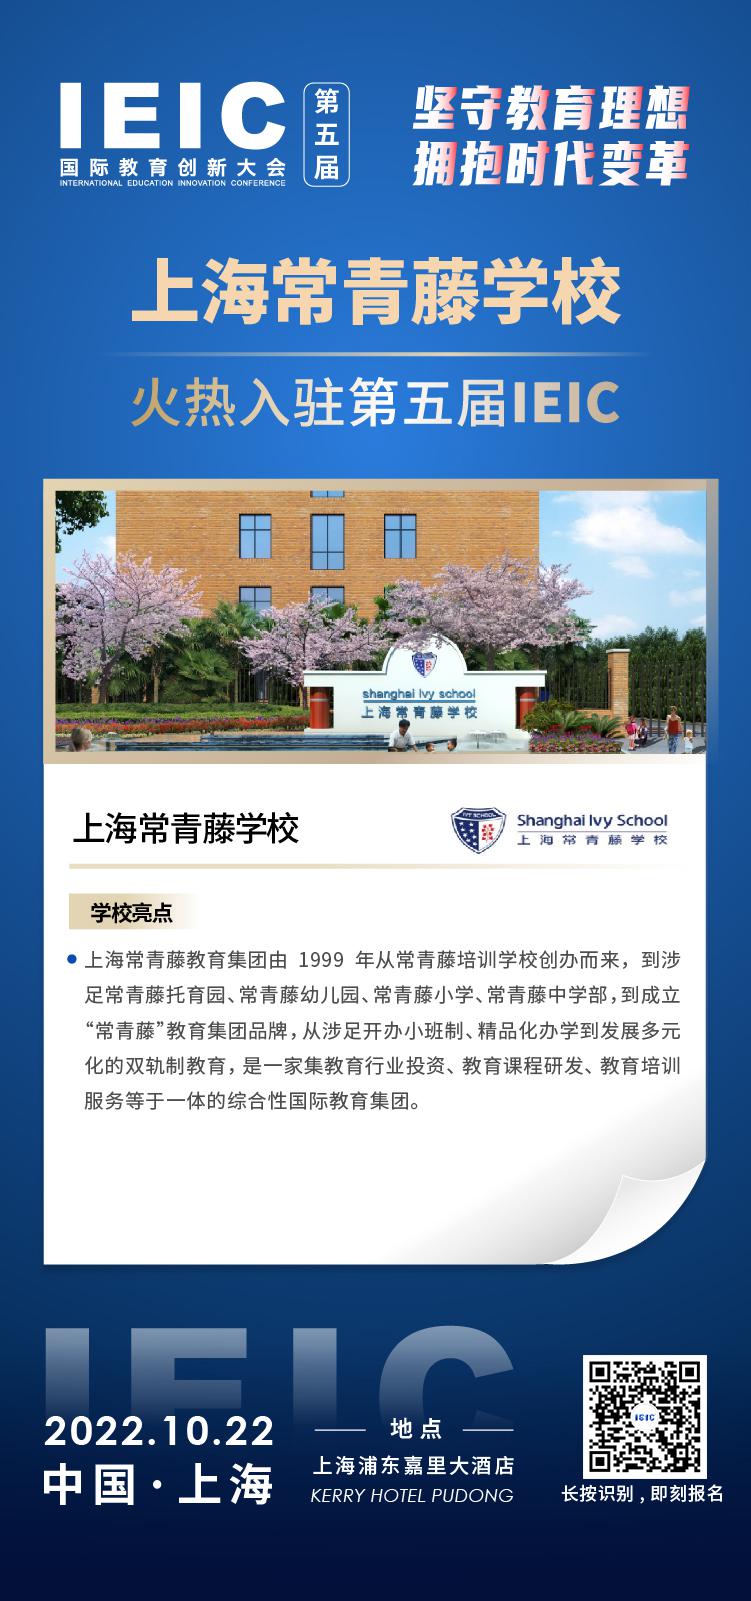 上海常青藤学校成功入驻参加2022年远播第五届IEIC国际教育创新大会